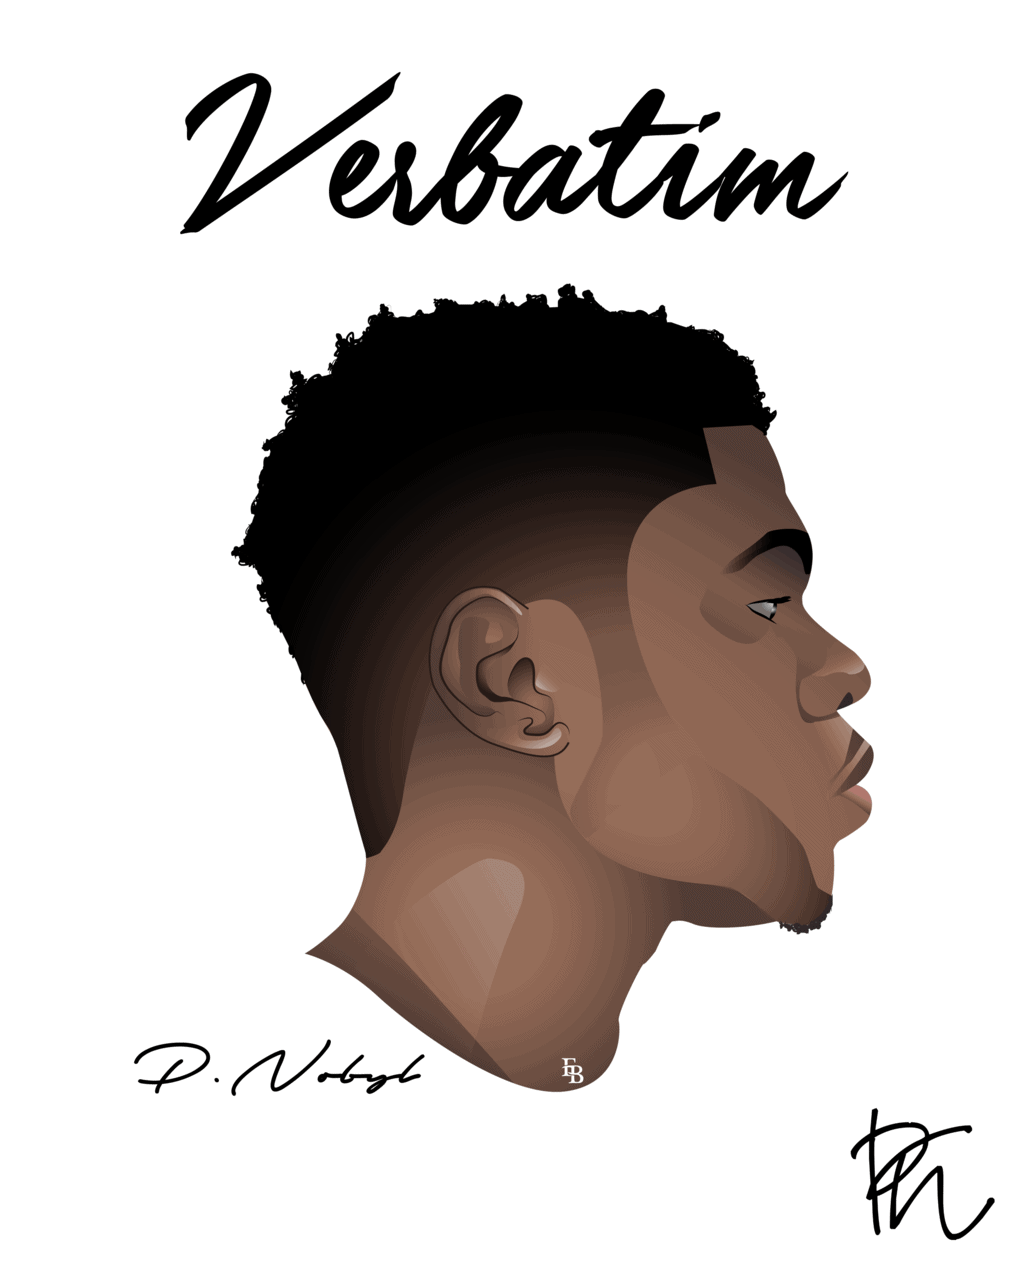 Verbatim-EP-Artwork